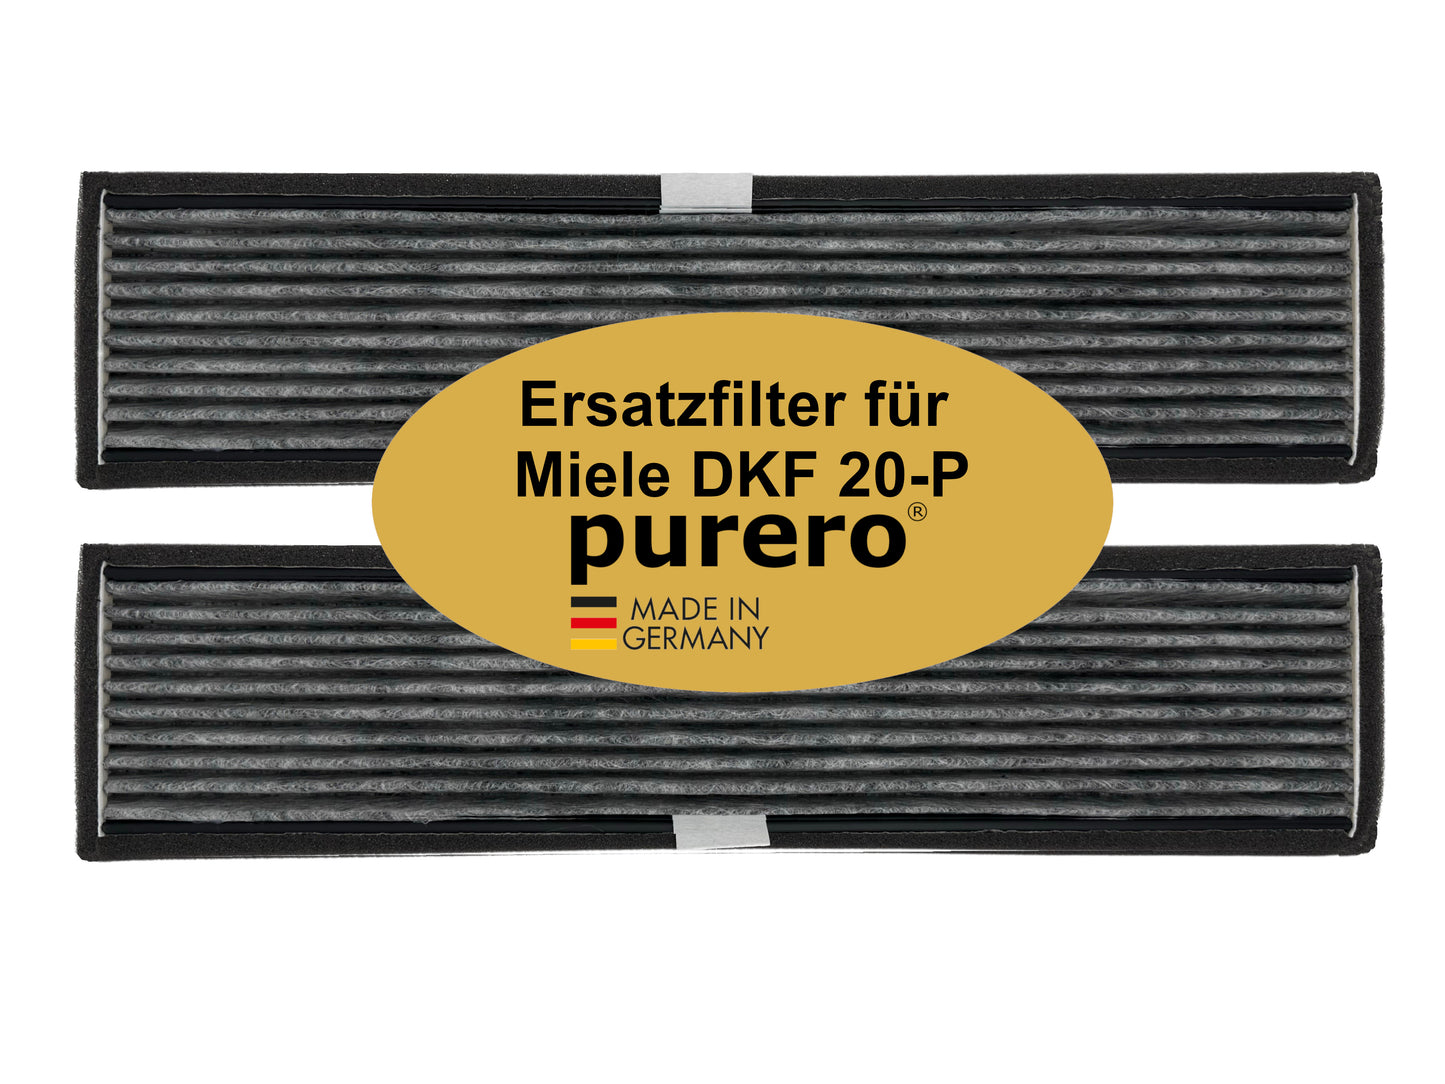 Aktivkohlefilter DKF 18-P als Ersatz für Miele Dunstabzugshauben der Marke purero. Verfügbar im 2er Pack DKF 20-P und 4er Pack als DKF 21-P.